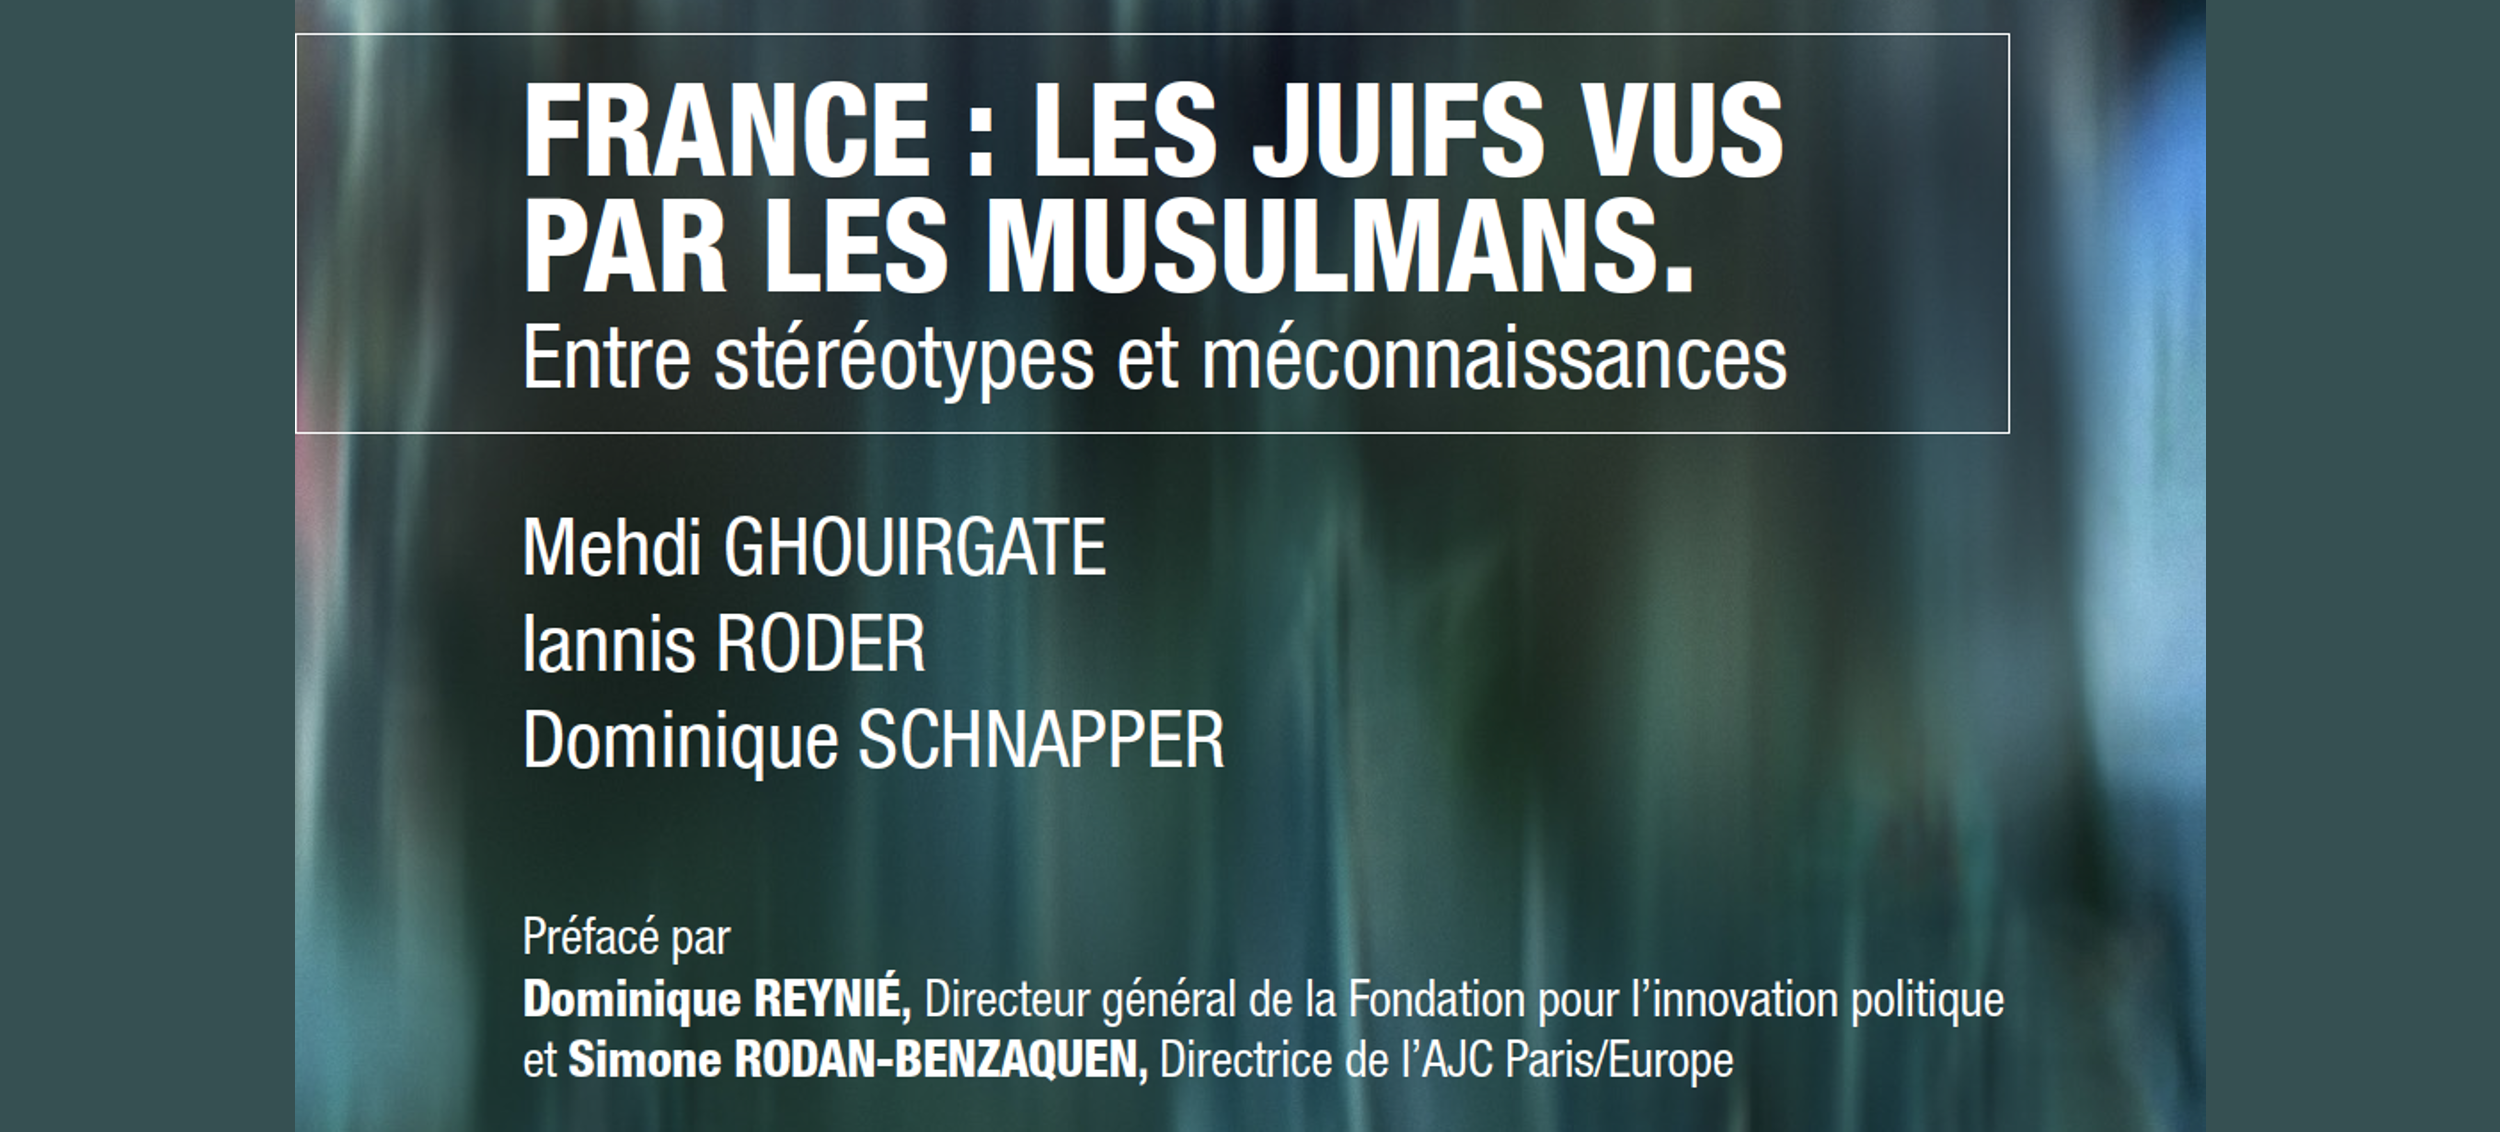 Etude : les juifs vus par les musulmans en France